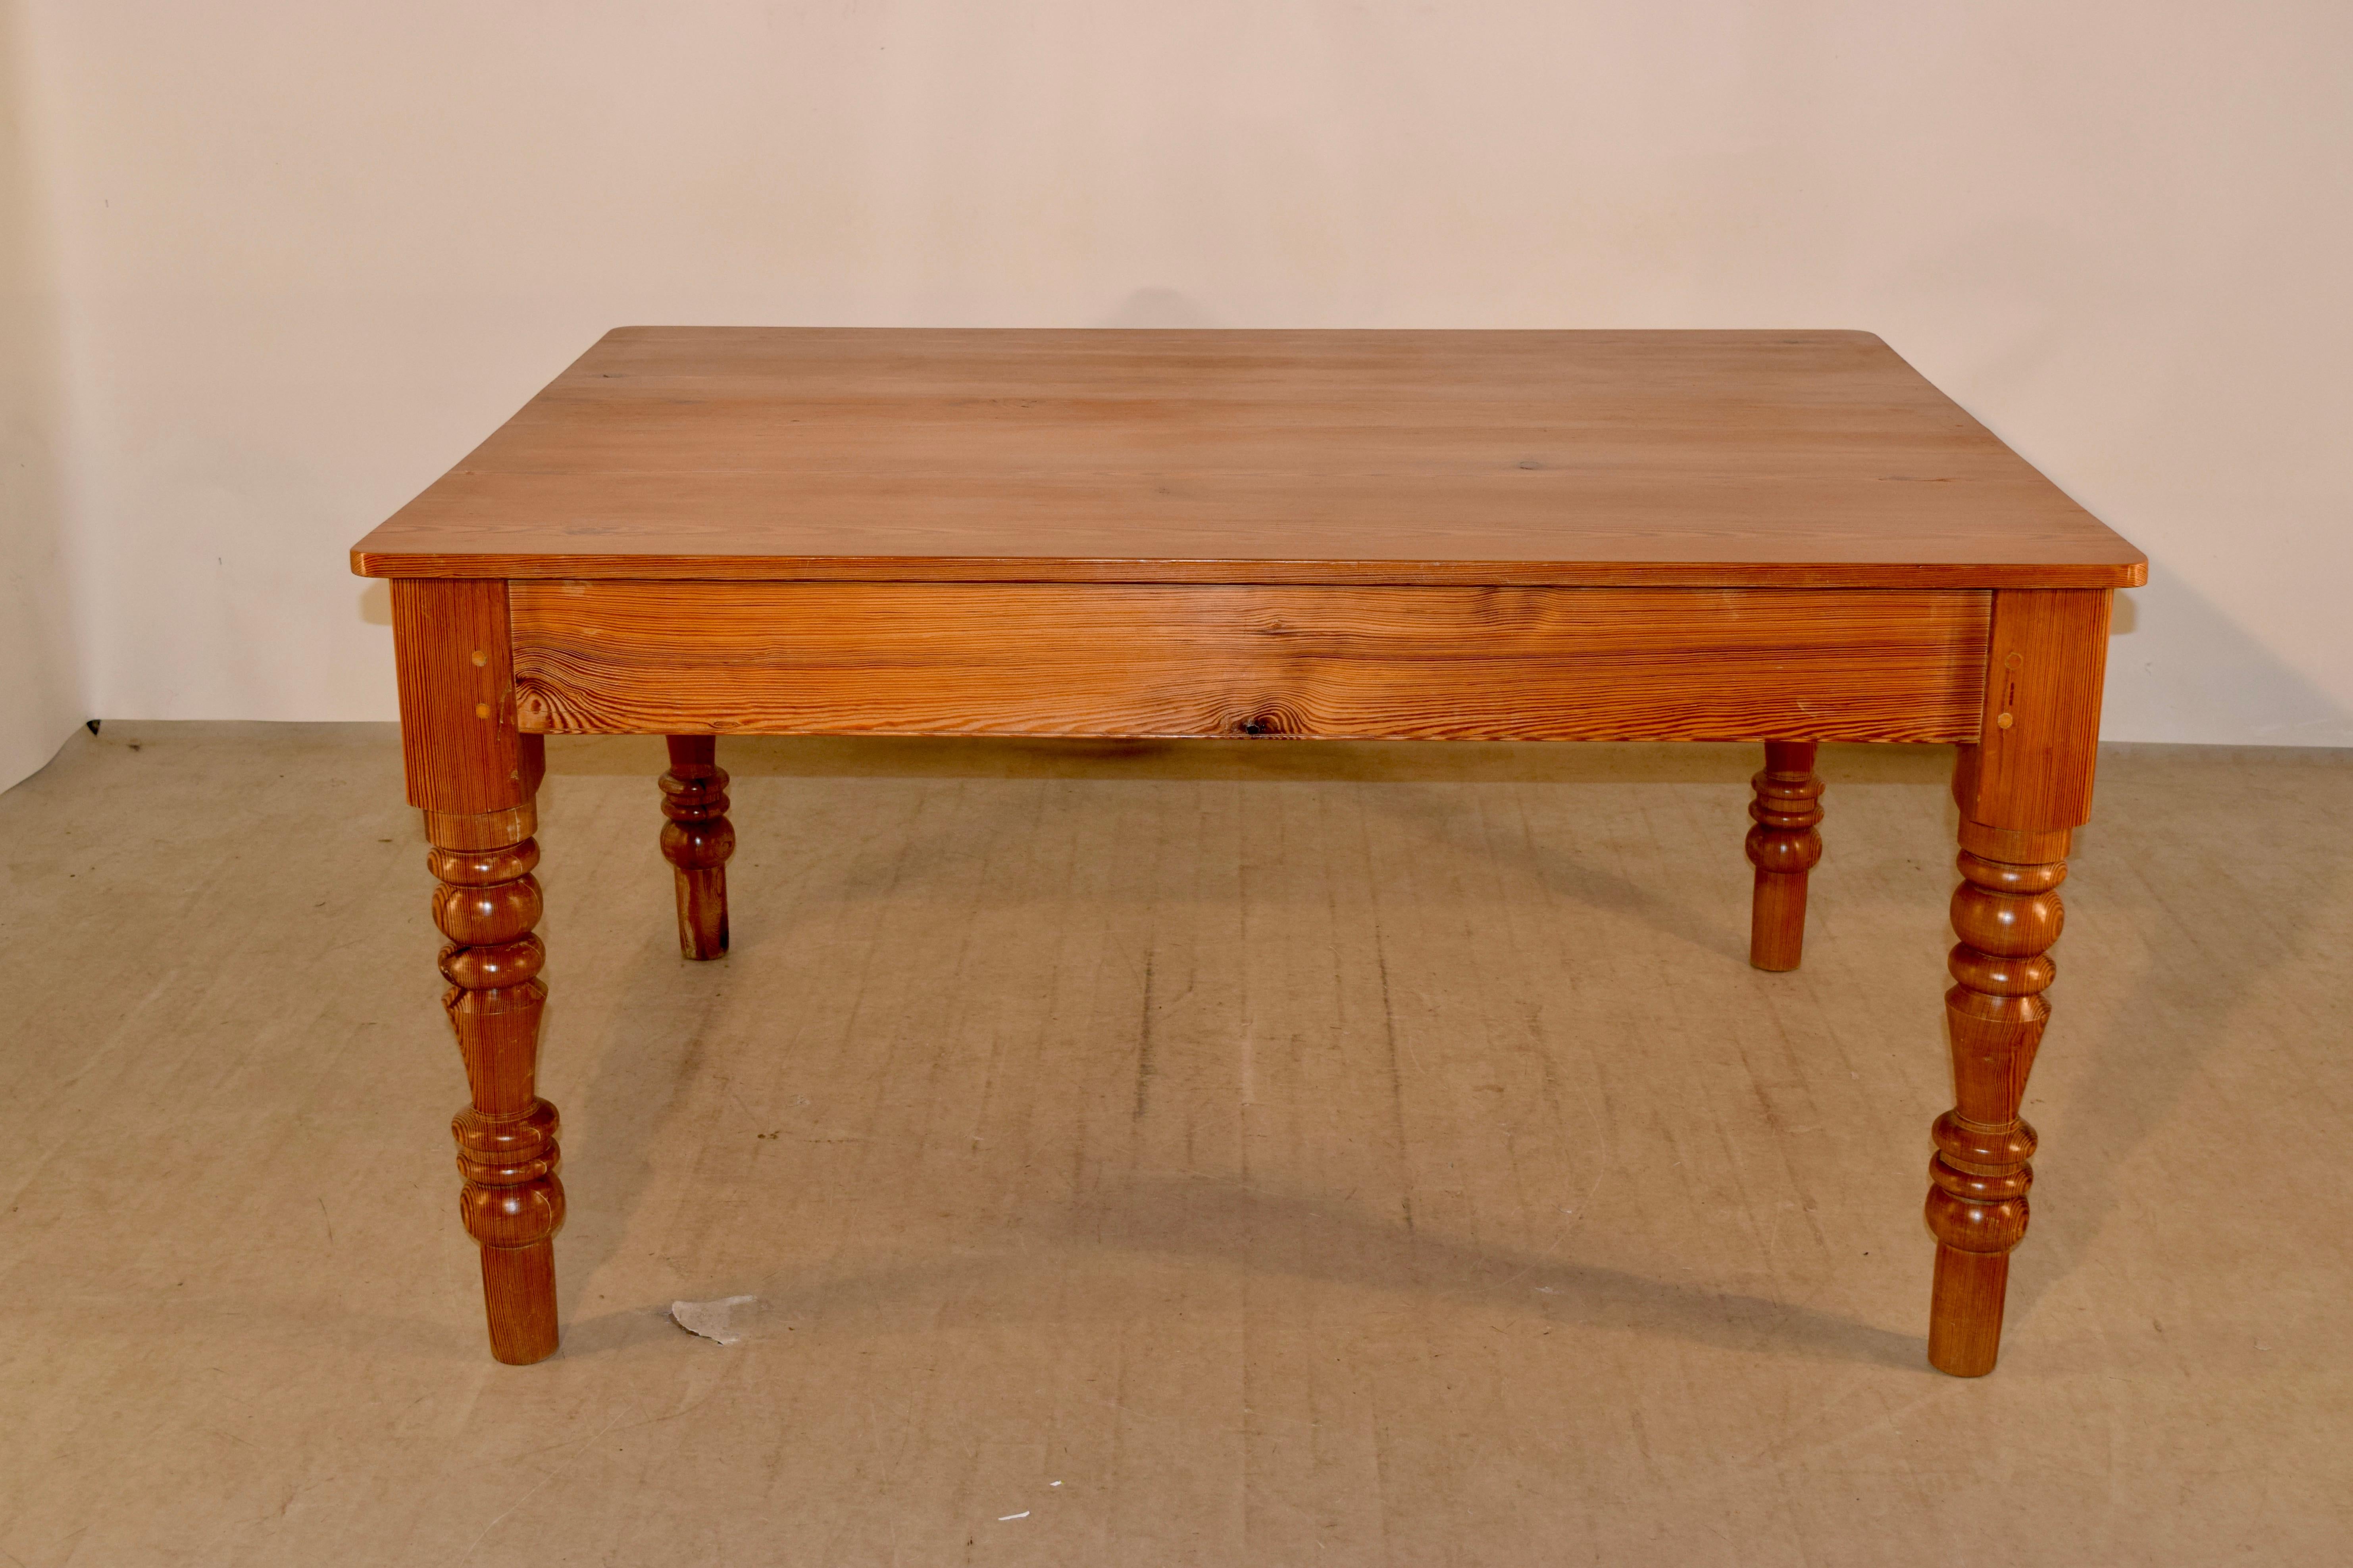 table de ferme anglaise du 19ème siècle, fabriquée en pitch pine, avec un magnifique veinage sur le dessus, descendant vers un simple tablier et reposant sur des pieds tournés à la main. Le tablier mesure 24,25 pouces de hauteur.